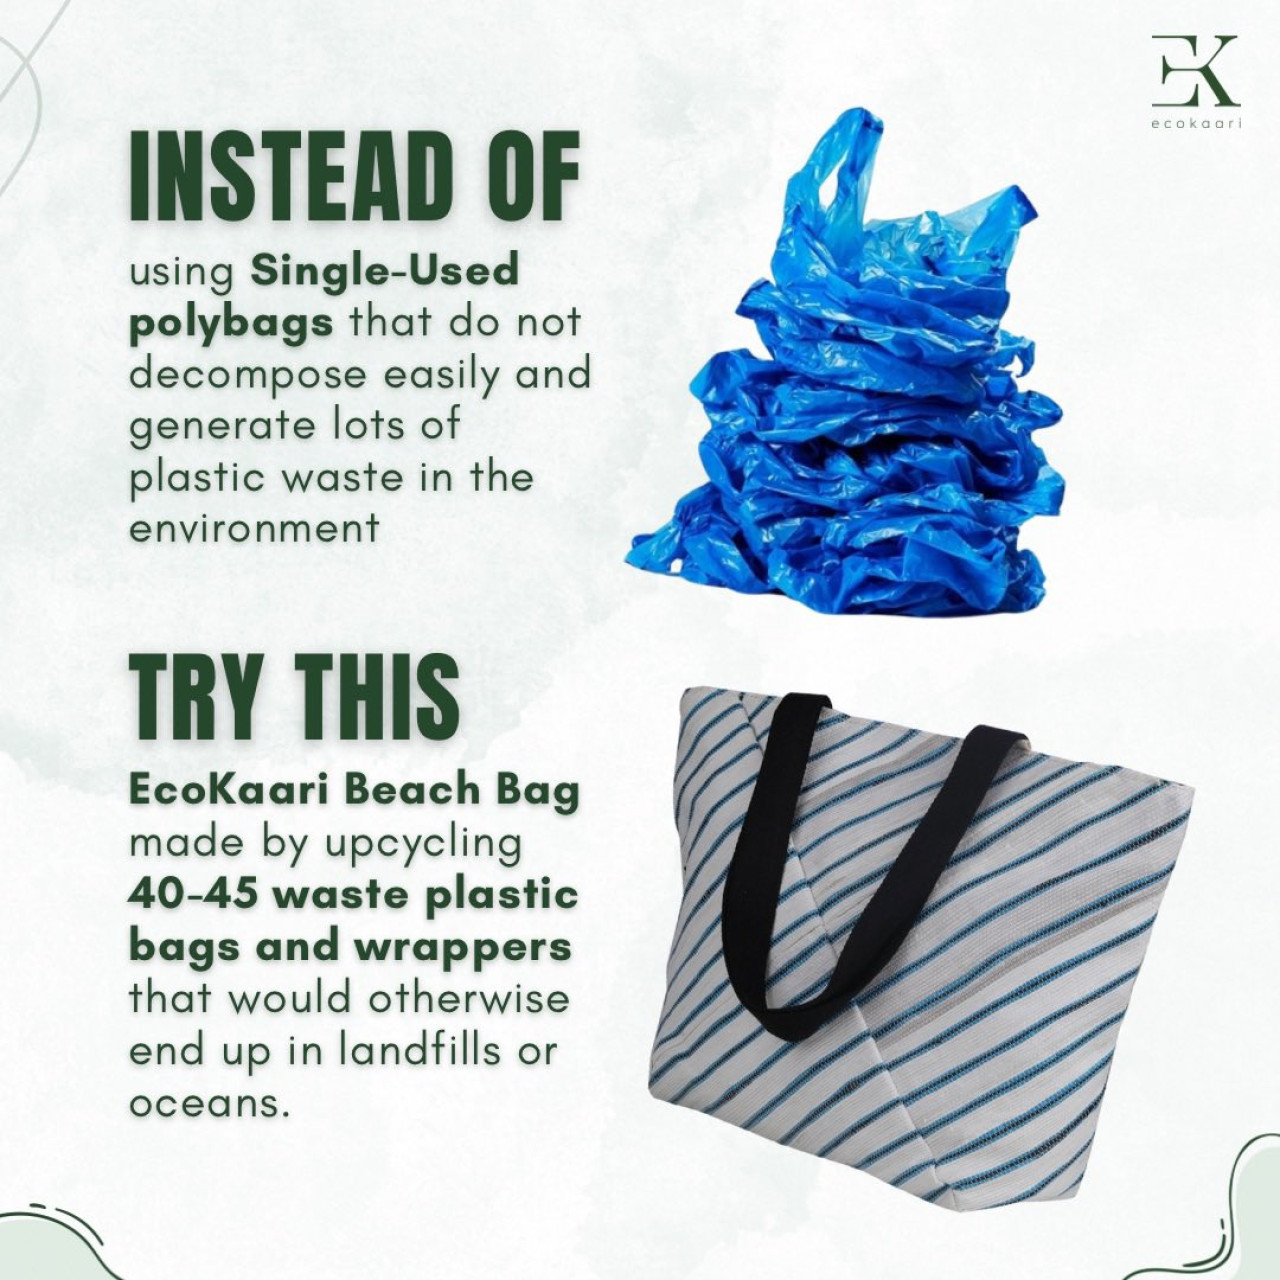 Una empresa que transforma los envoltorios de plástico en accesorios de moda. Foto: X/@EcoKaari.